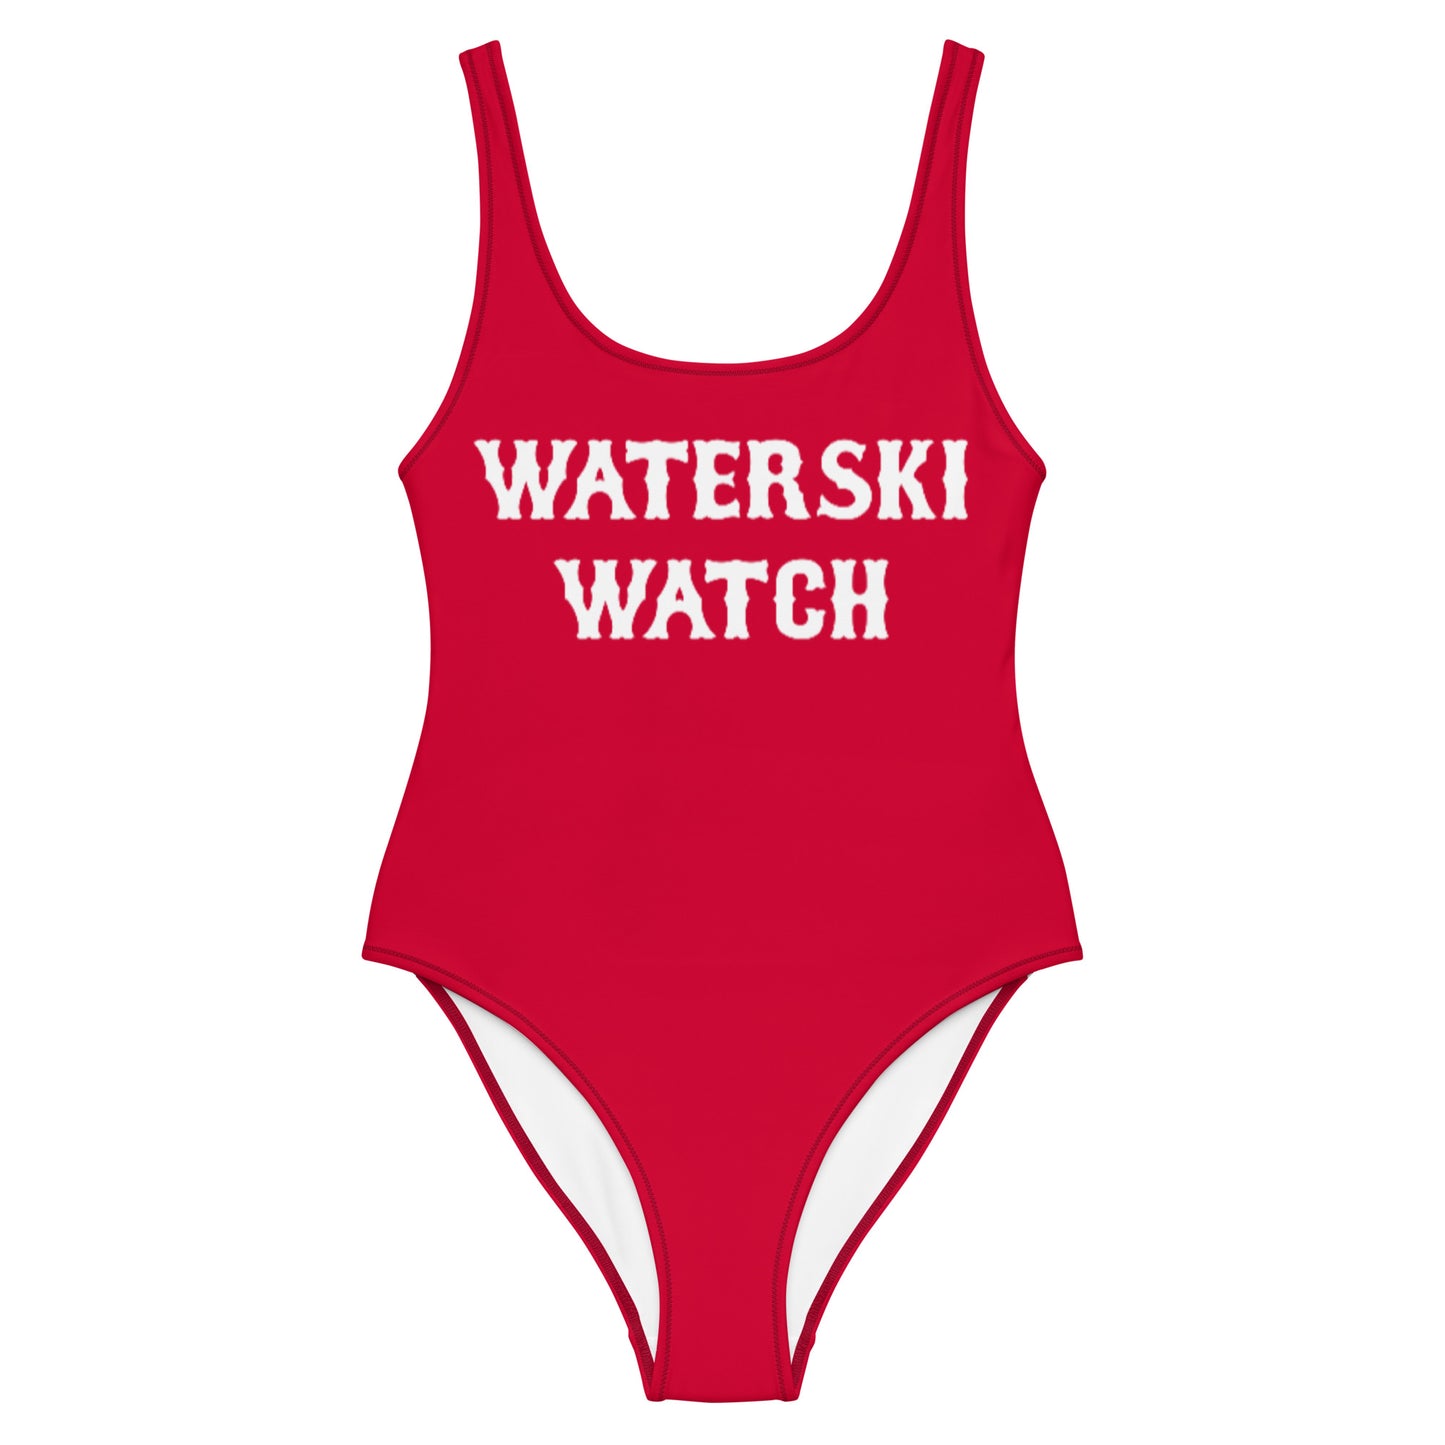 Waterski Watch Swimsuit